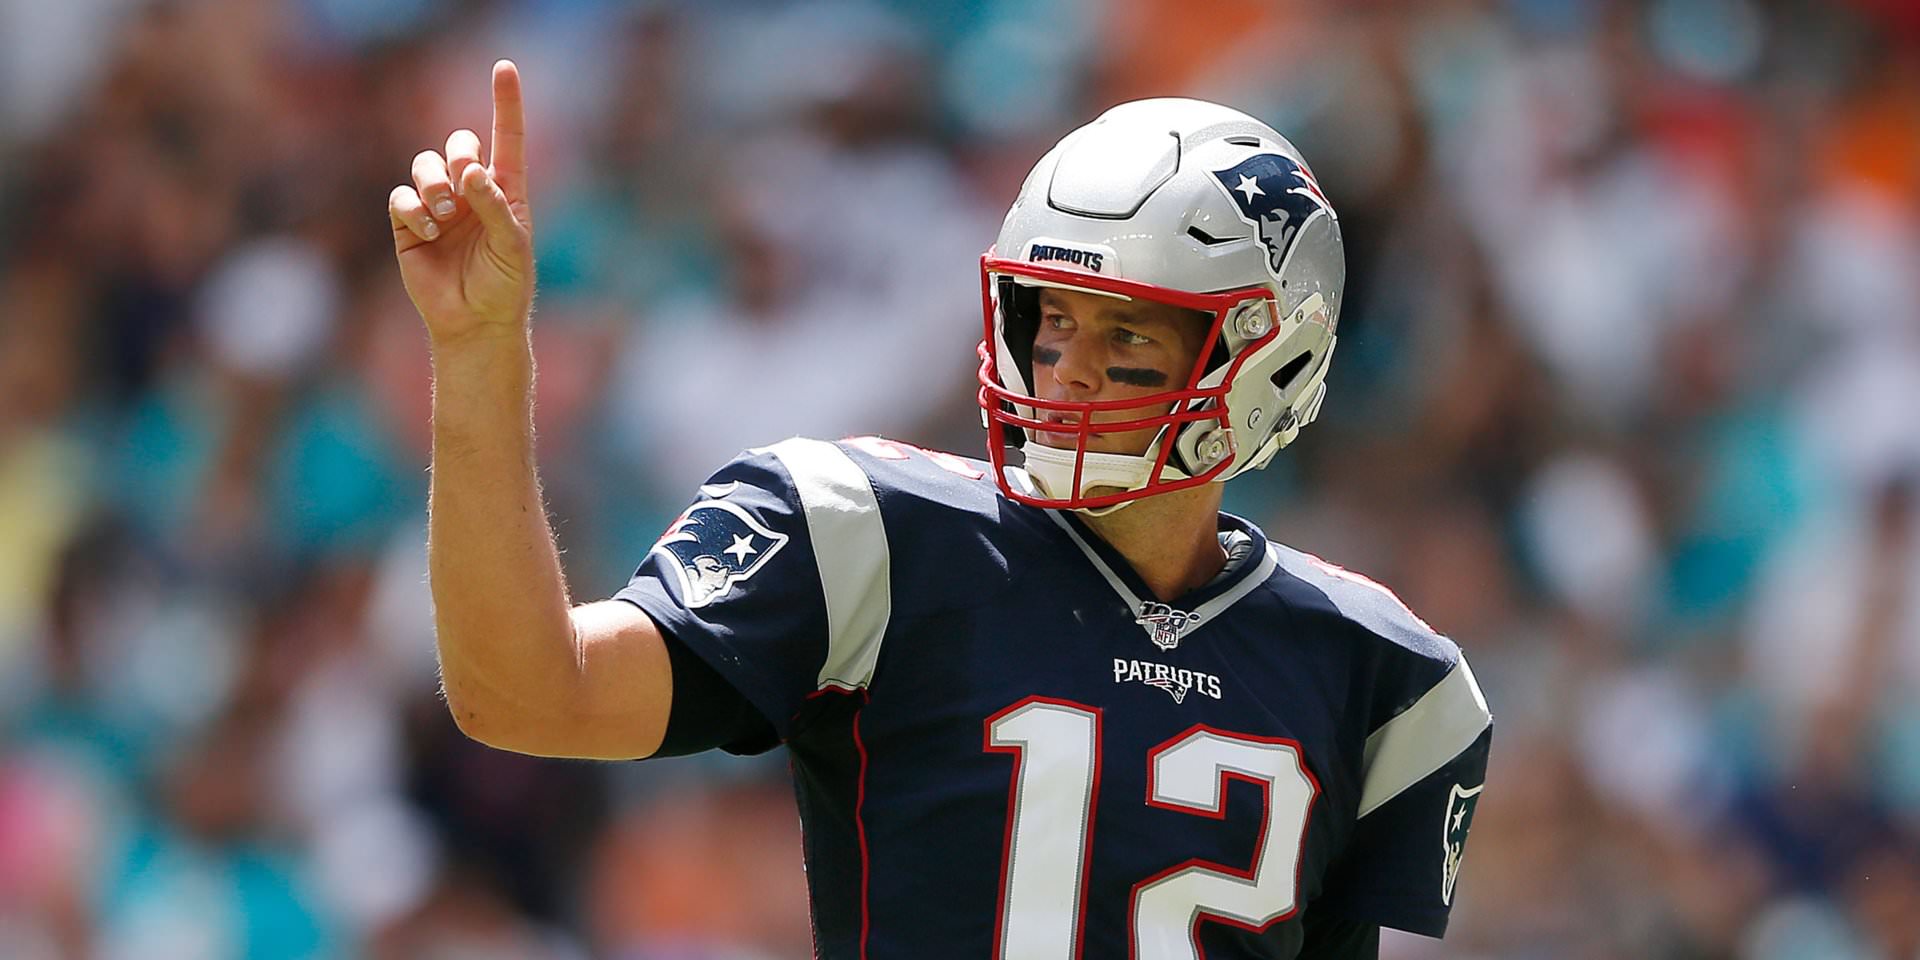 'Vamos jogar!': Tom Brady critica a NFL durante o jogo em que ele não estava jogando